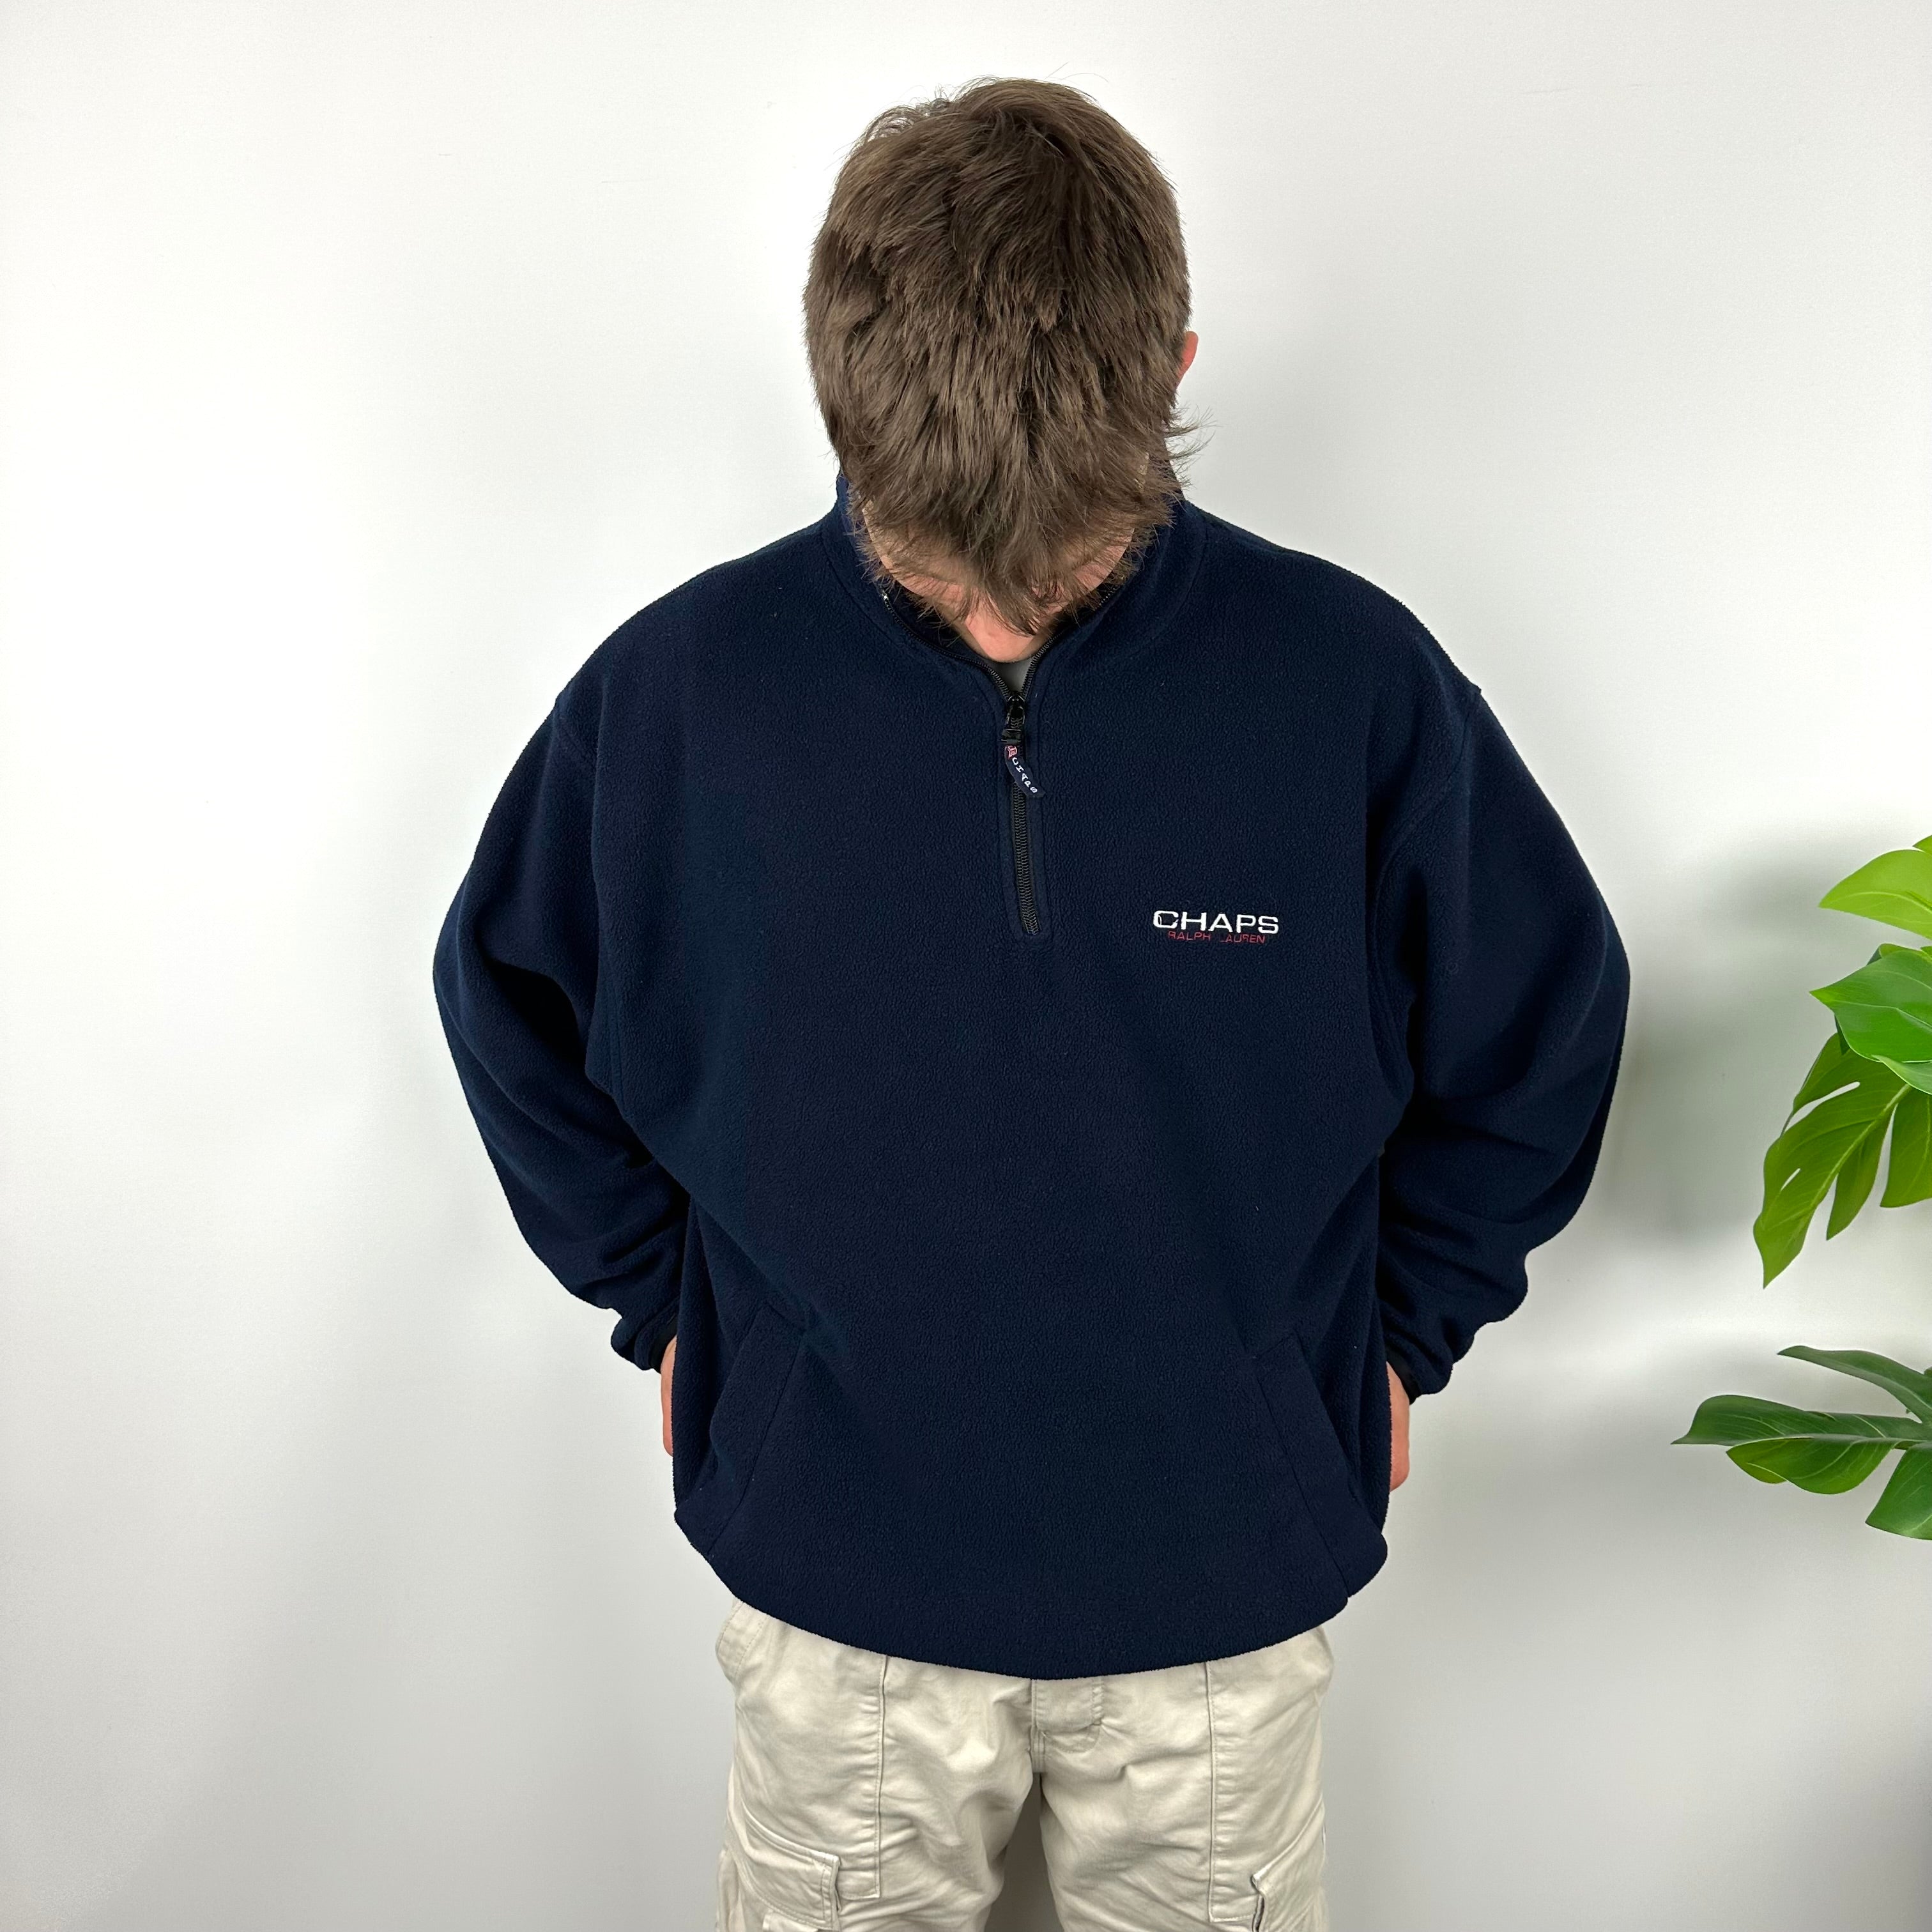 Chaps Ralph Lauren Navy Embroidered Spell Out Teddy Bear Fleece Quarter Zip Sweatshirt (XL)